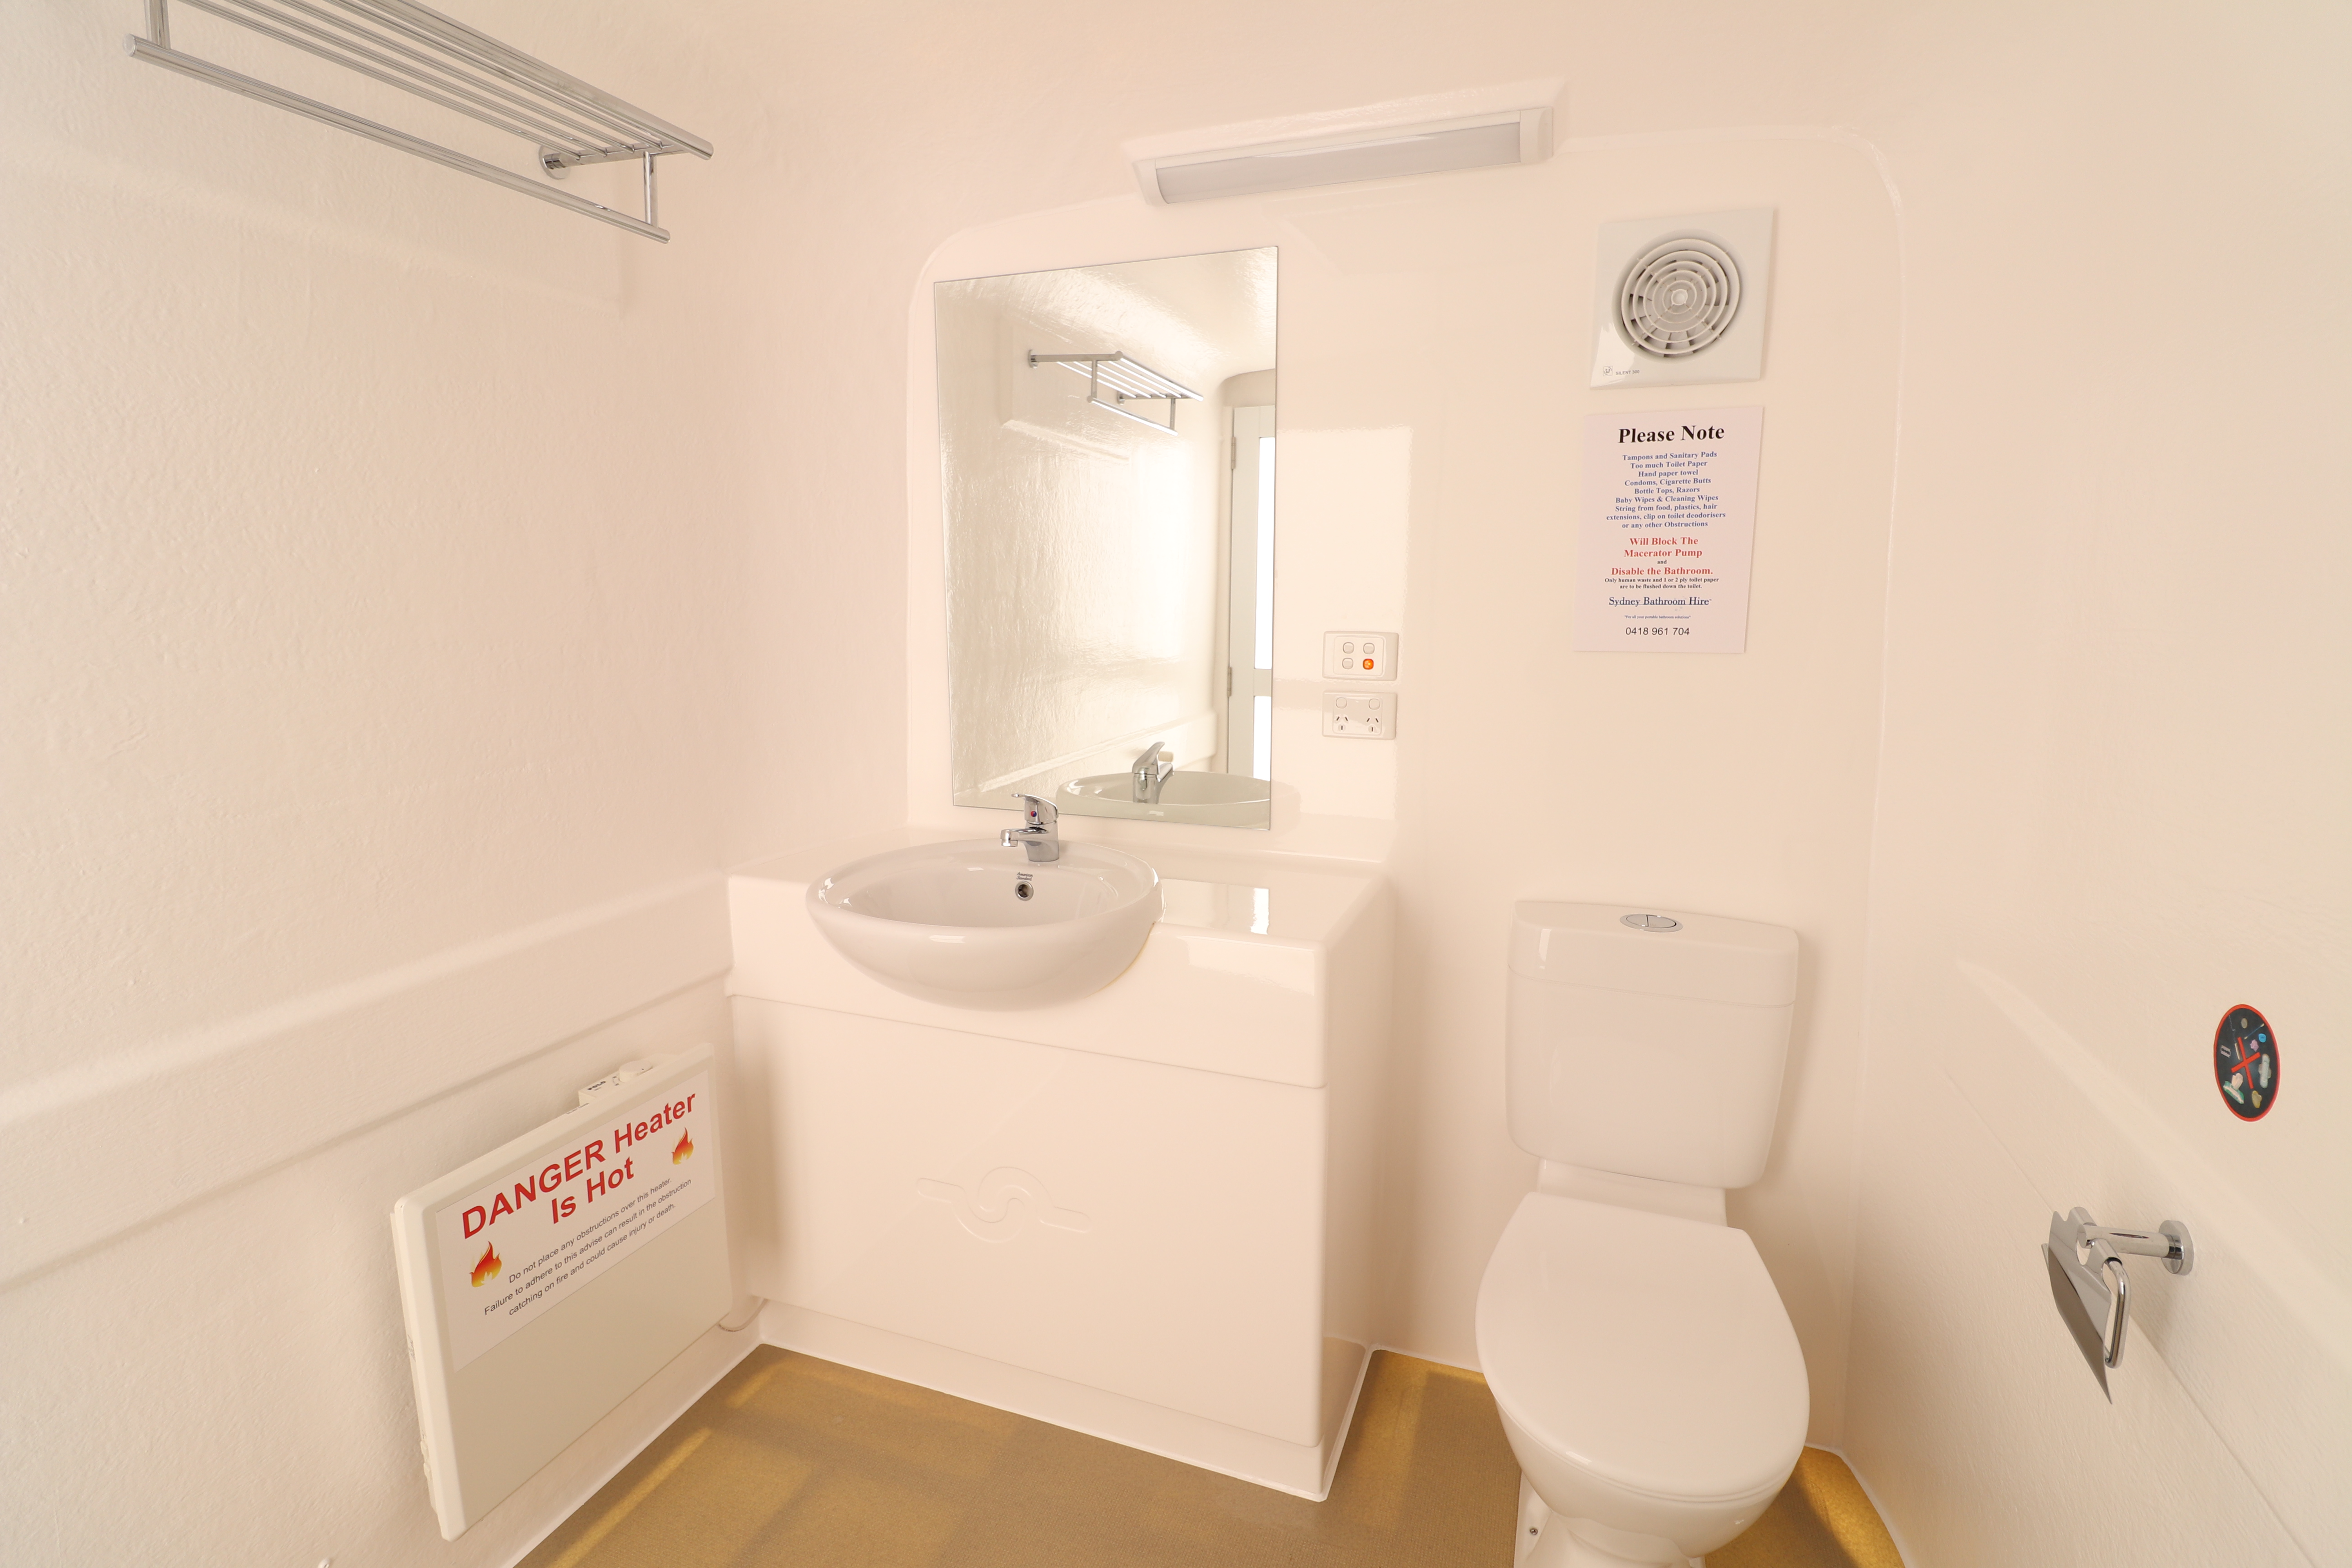 Portable Bathrooms Gallery ImagesSydney bathroom hire